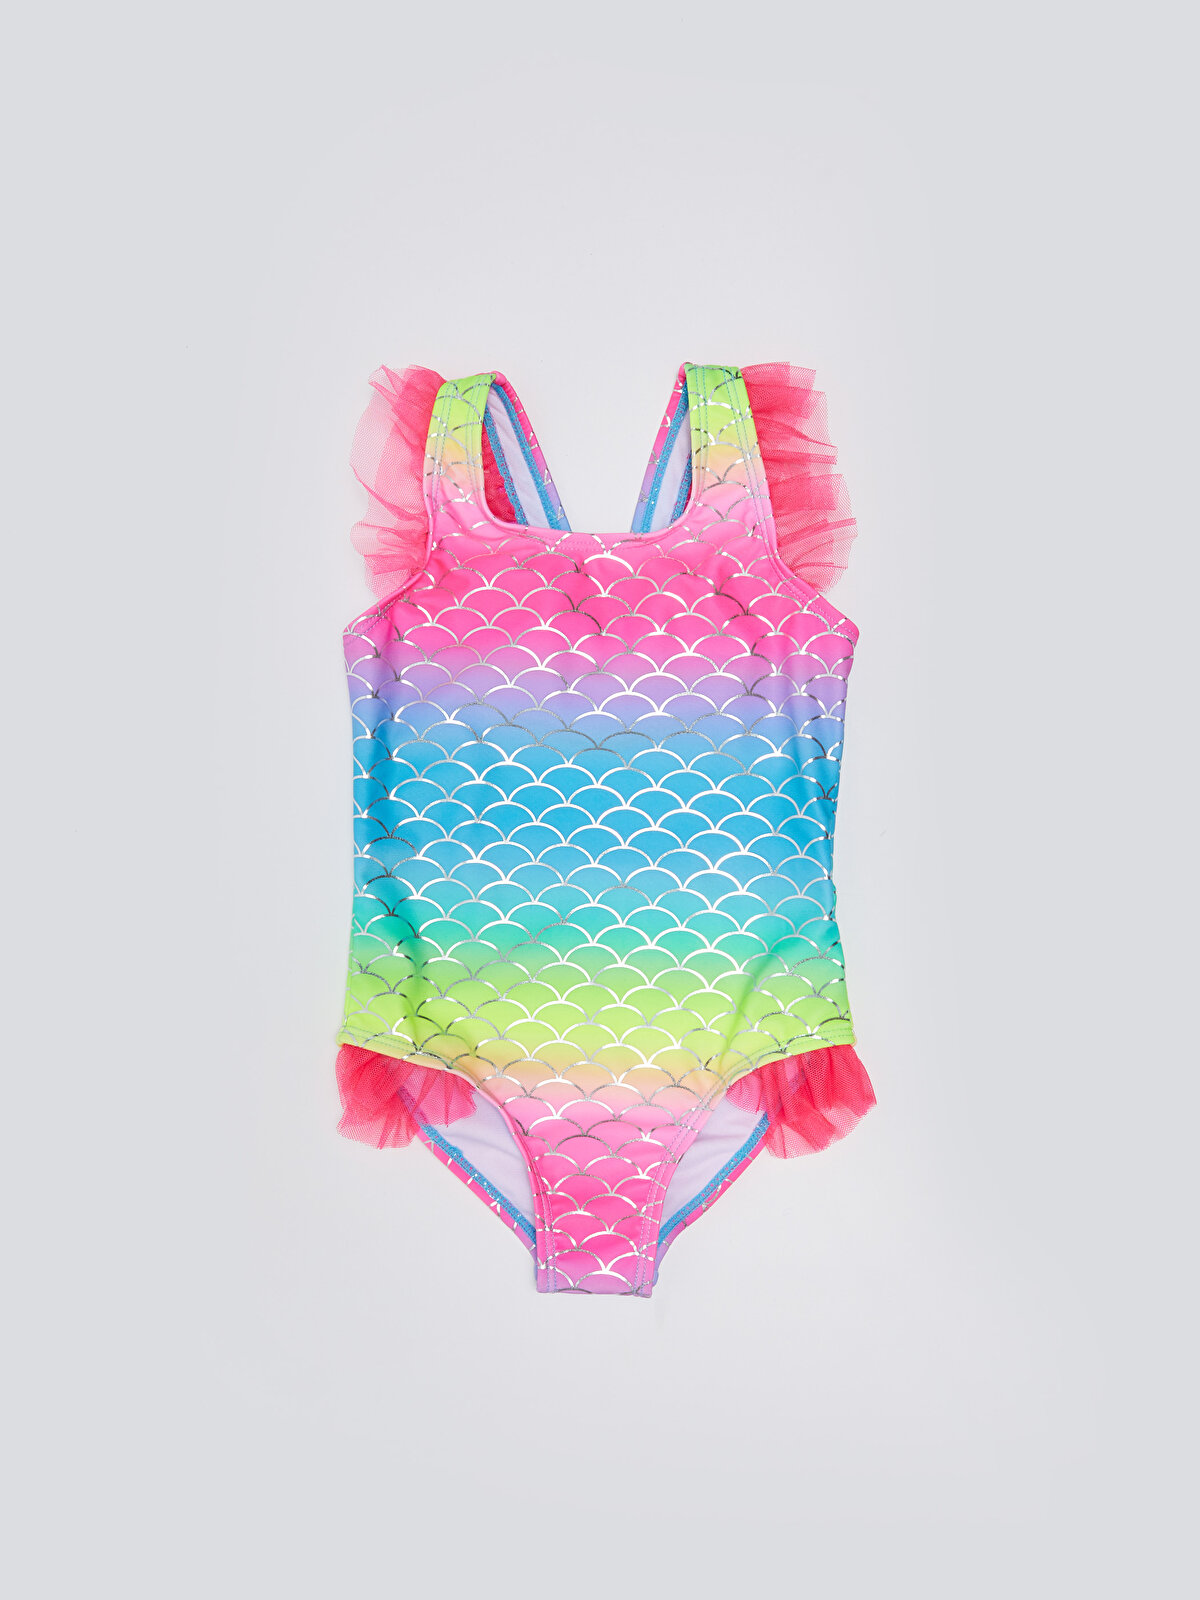 Strappy Printed Baby Girl Swimsuit -S36015Z1-LT4 - S36015Z1-LT4 